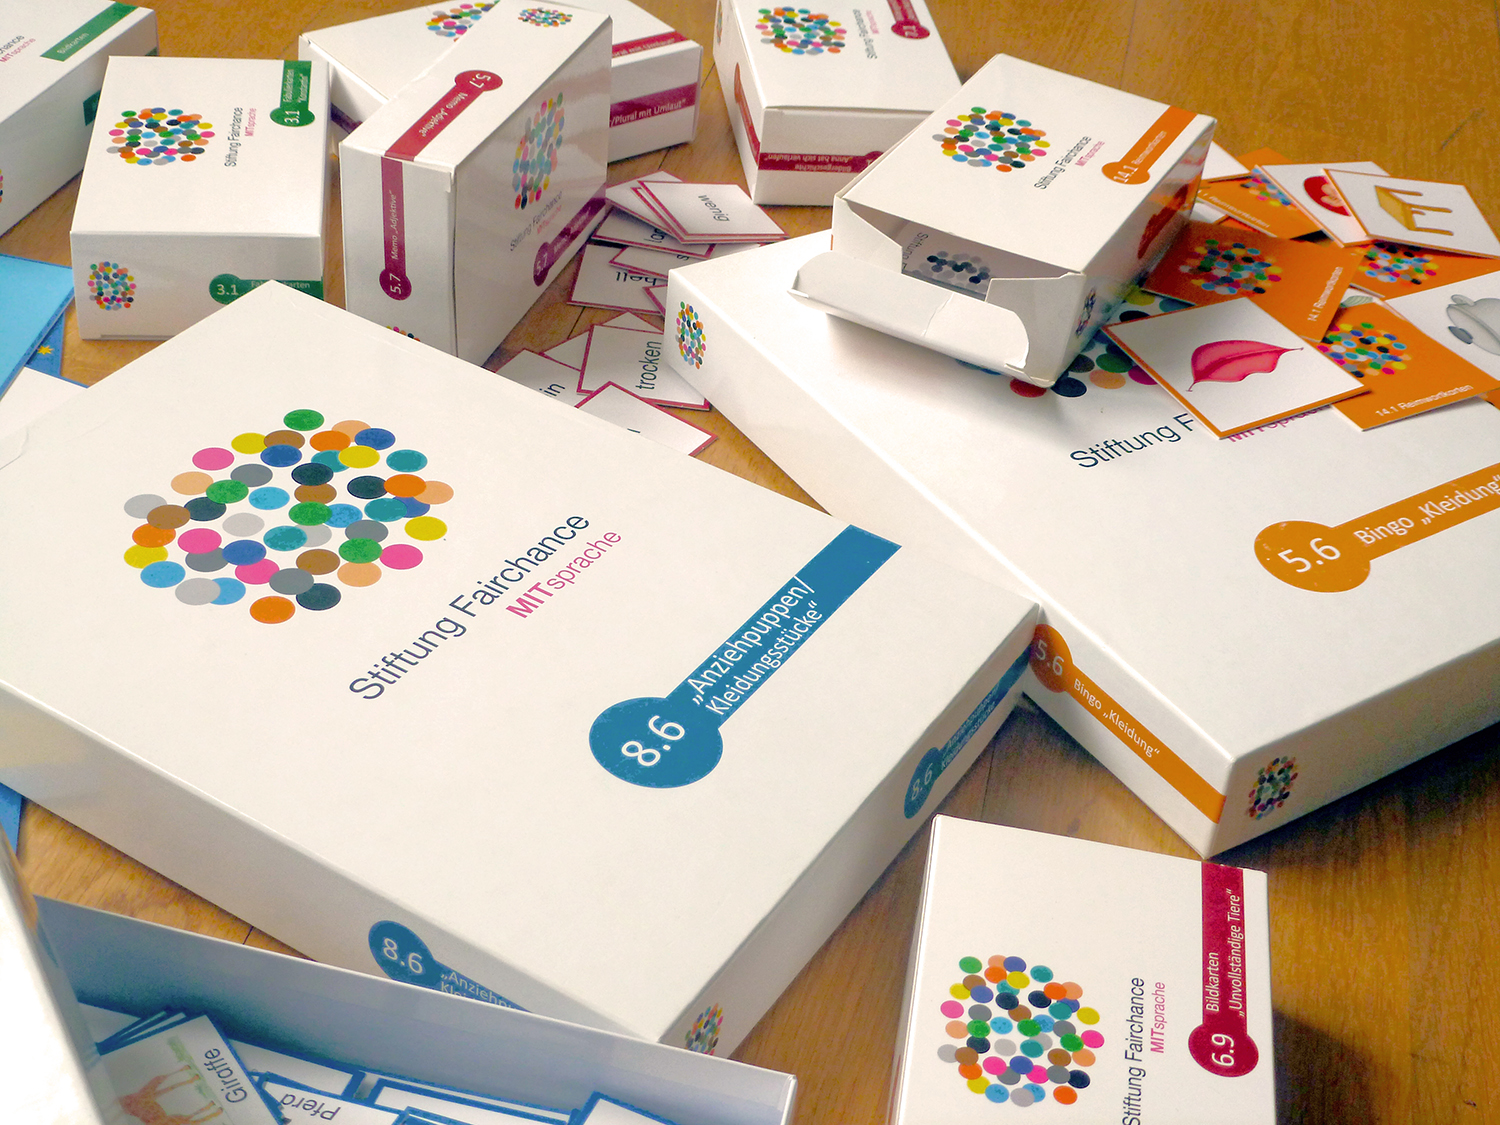 Bücher und Karten dienen als Material für die Kurse zur Sprachförderung der Stiftung Fairchance